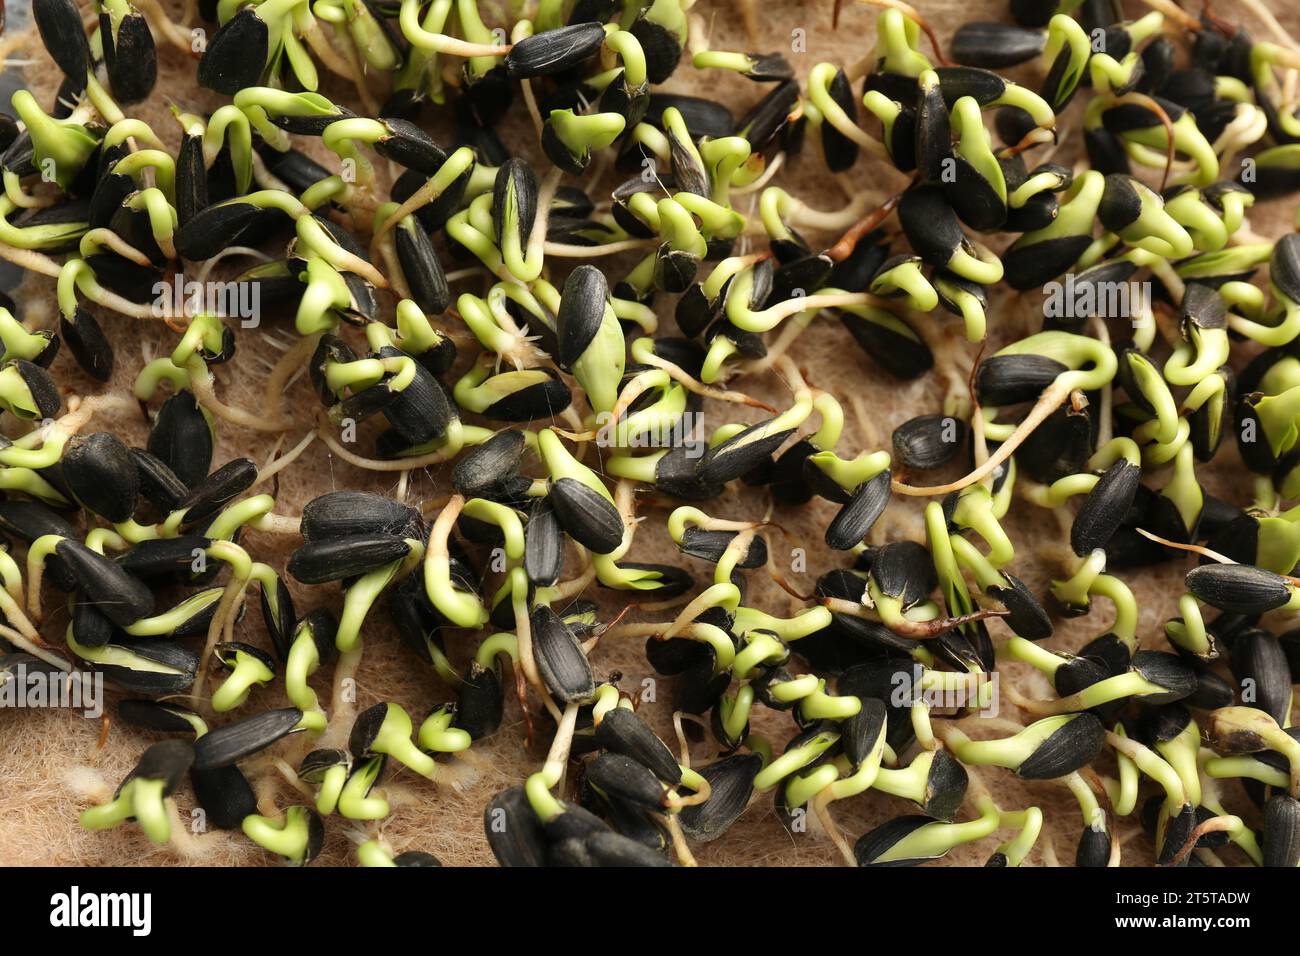 Culture de microgreens. Beaucoup de germes de tournesol sur tapis, closeup Banque D'Images